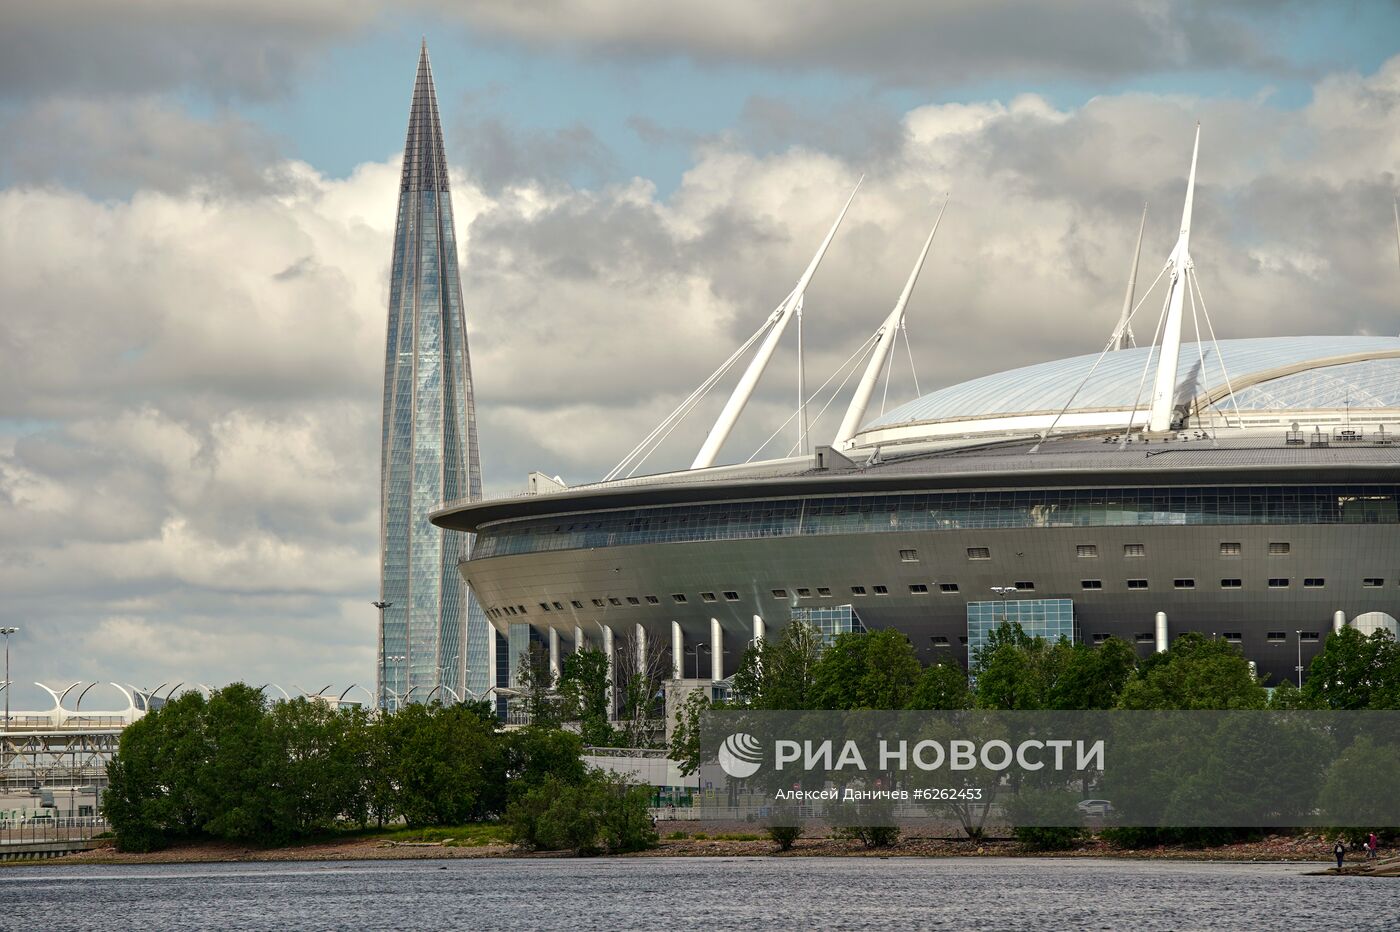 Стадион "Газпром-арена" в Санкт-Петербурге